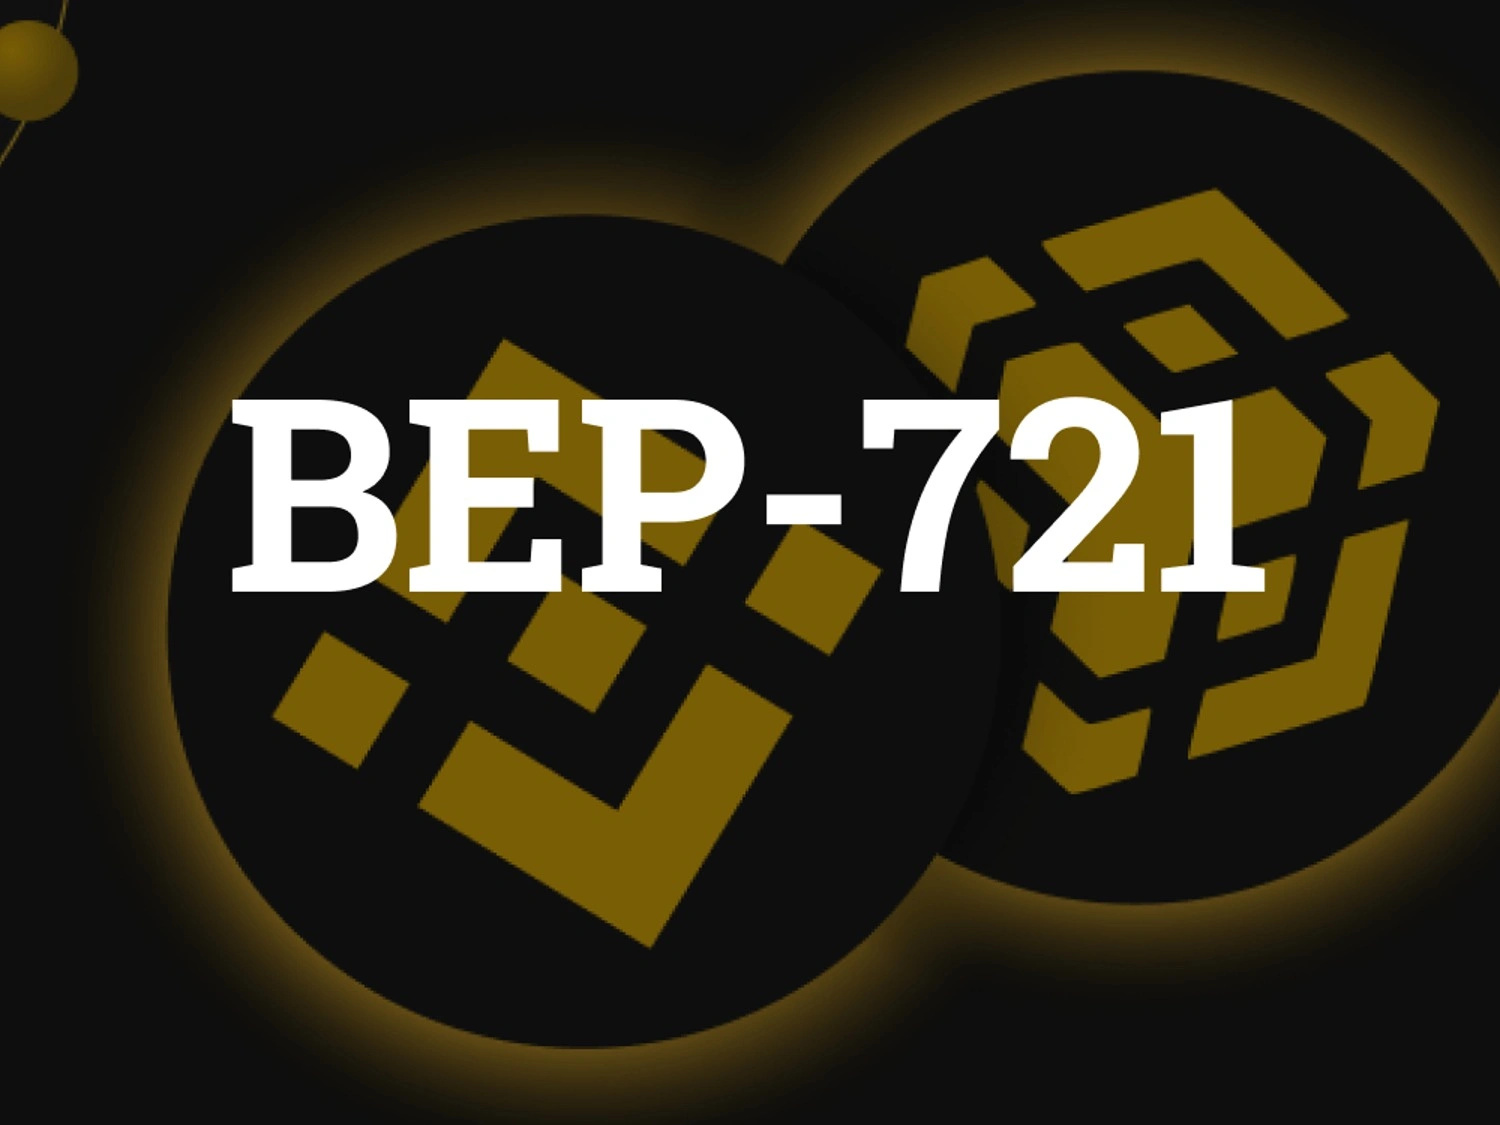 BEP-721